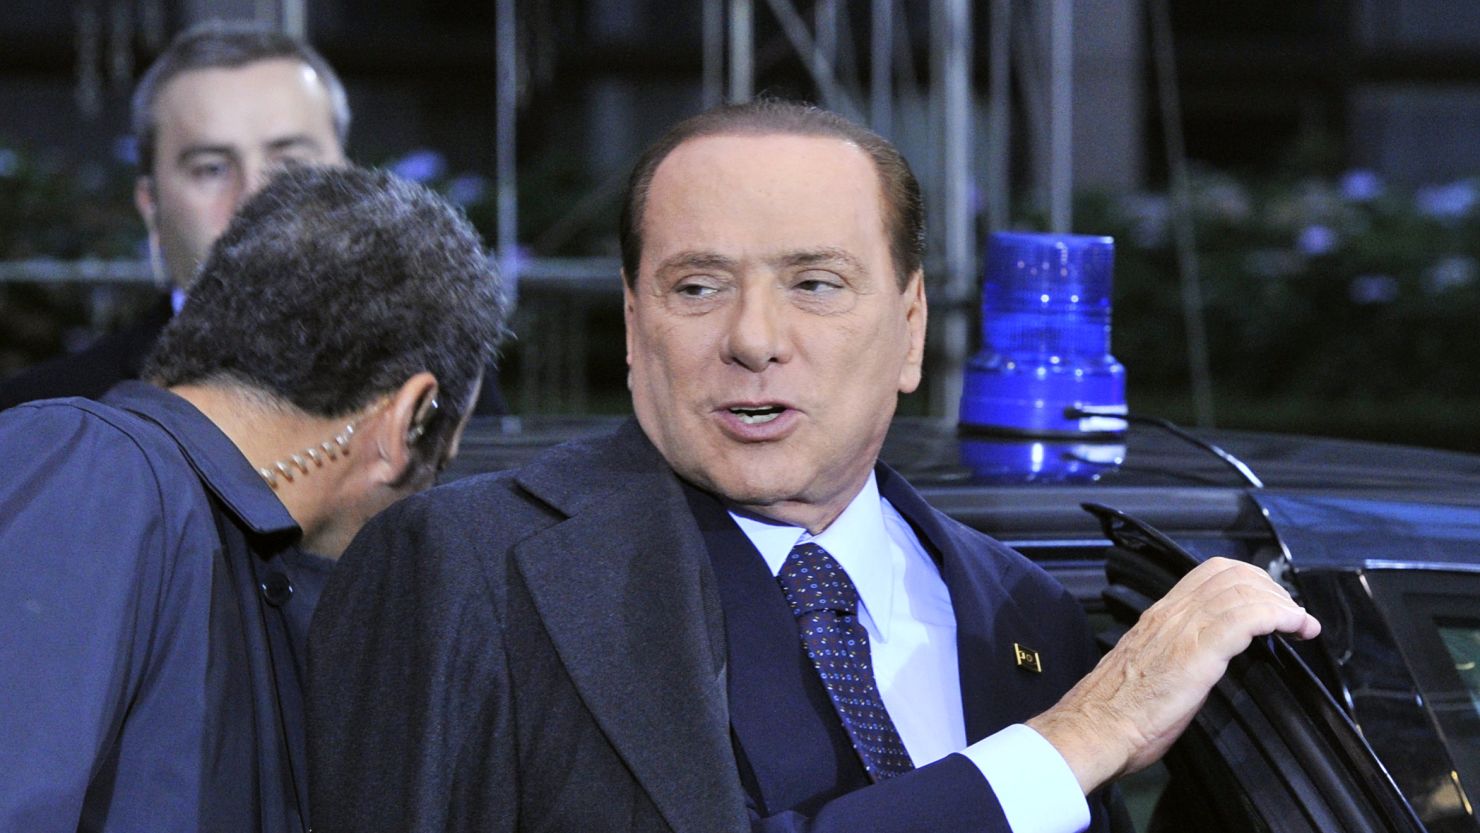 Italian Prime Minister Silvio Berlusconi's government has averted immediate collapse, according to Italian media reports.